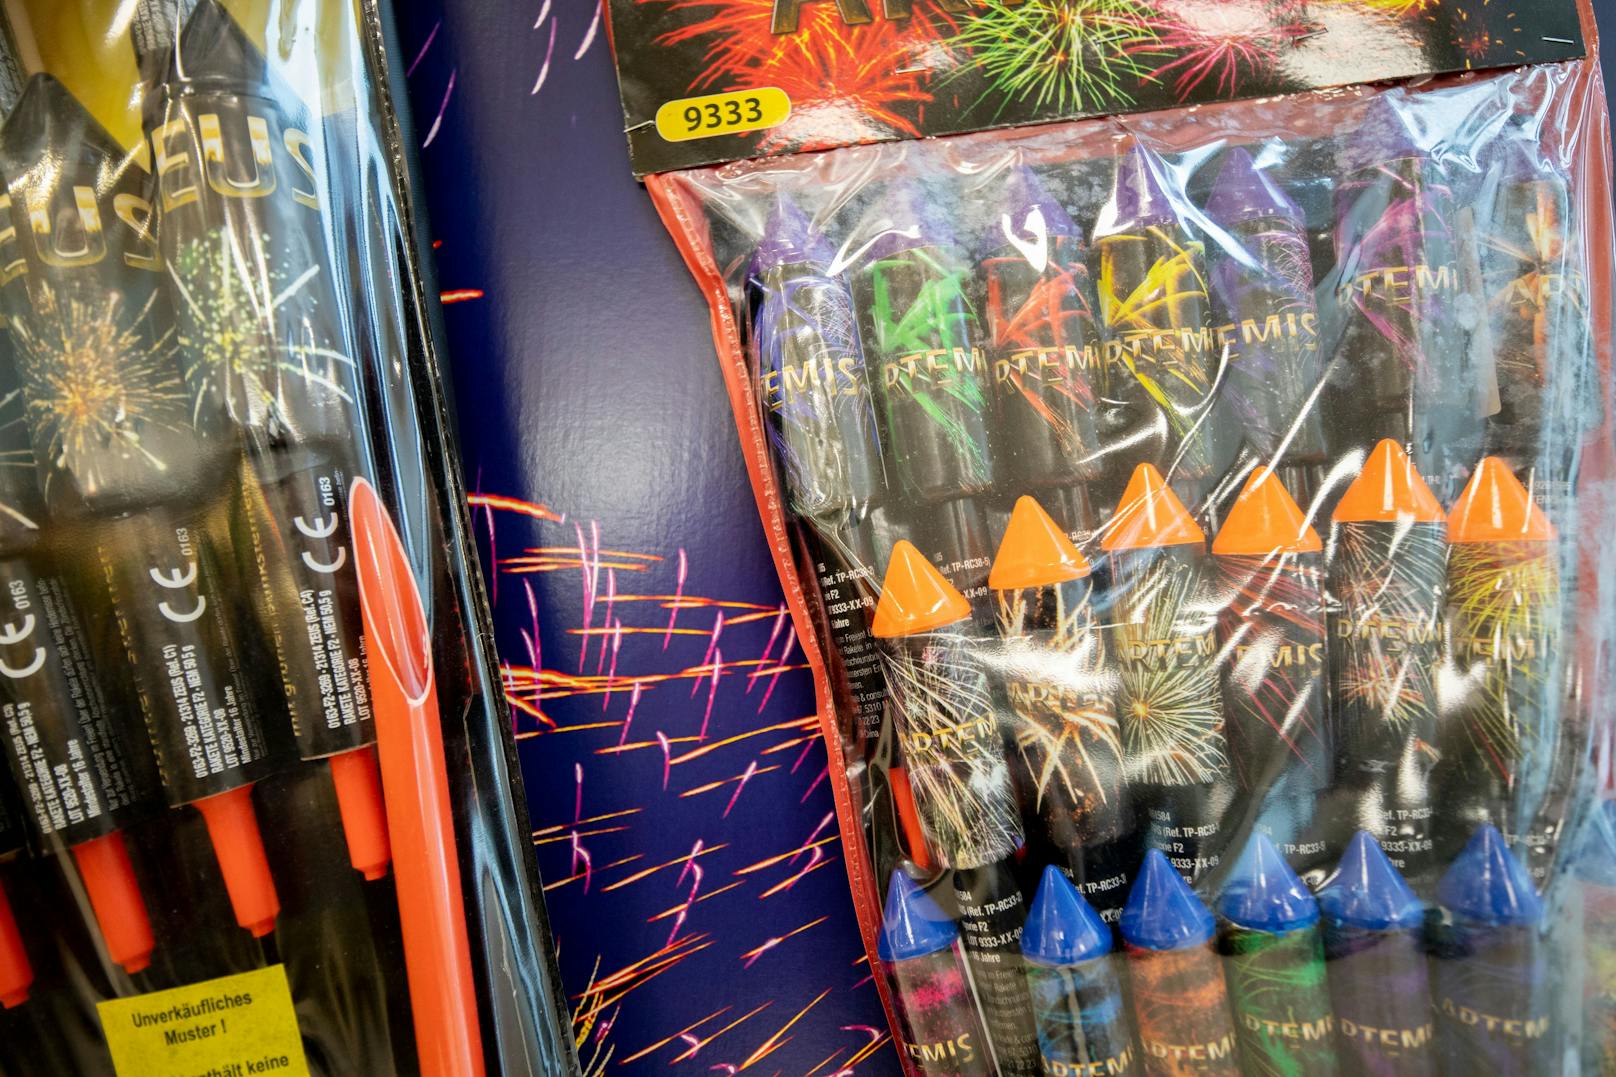 HOFER stoppt den Verkauf von Feuerwerk.